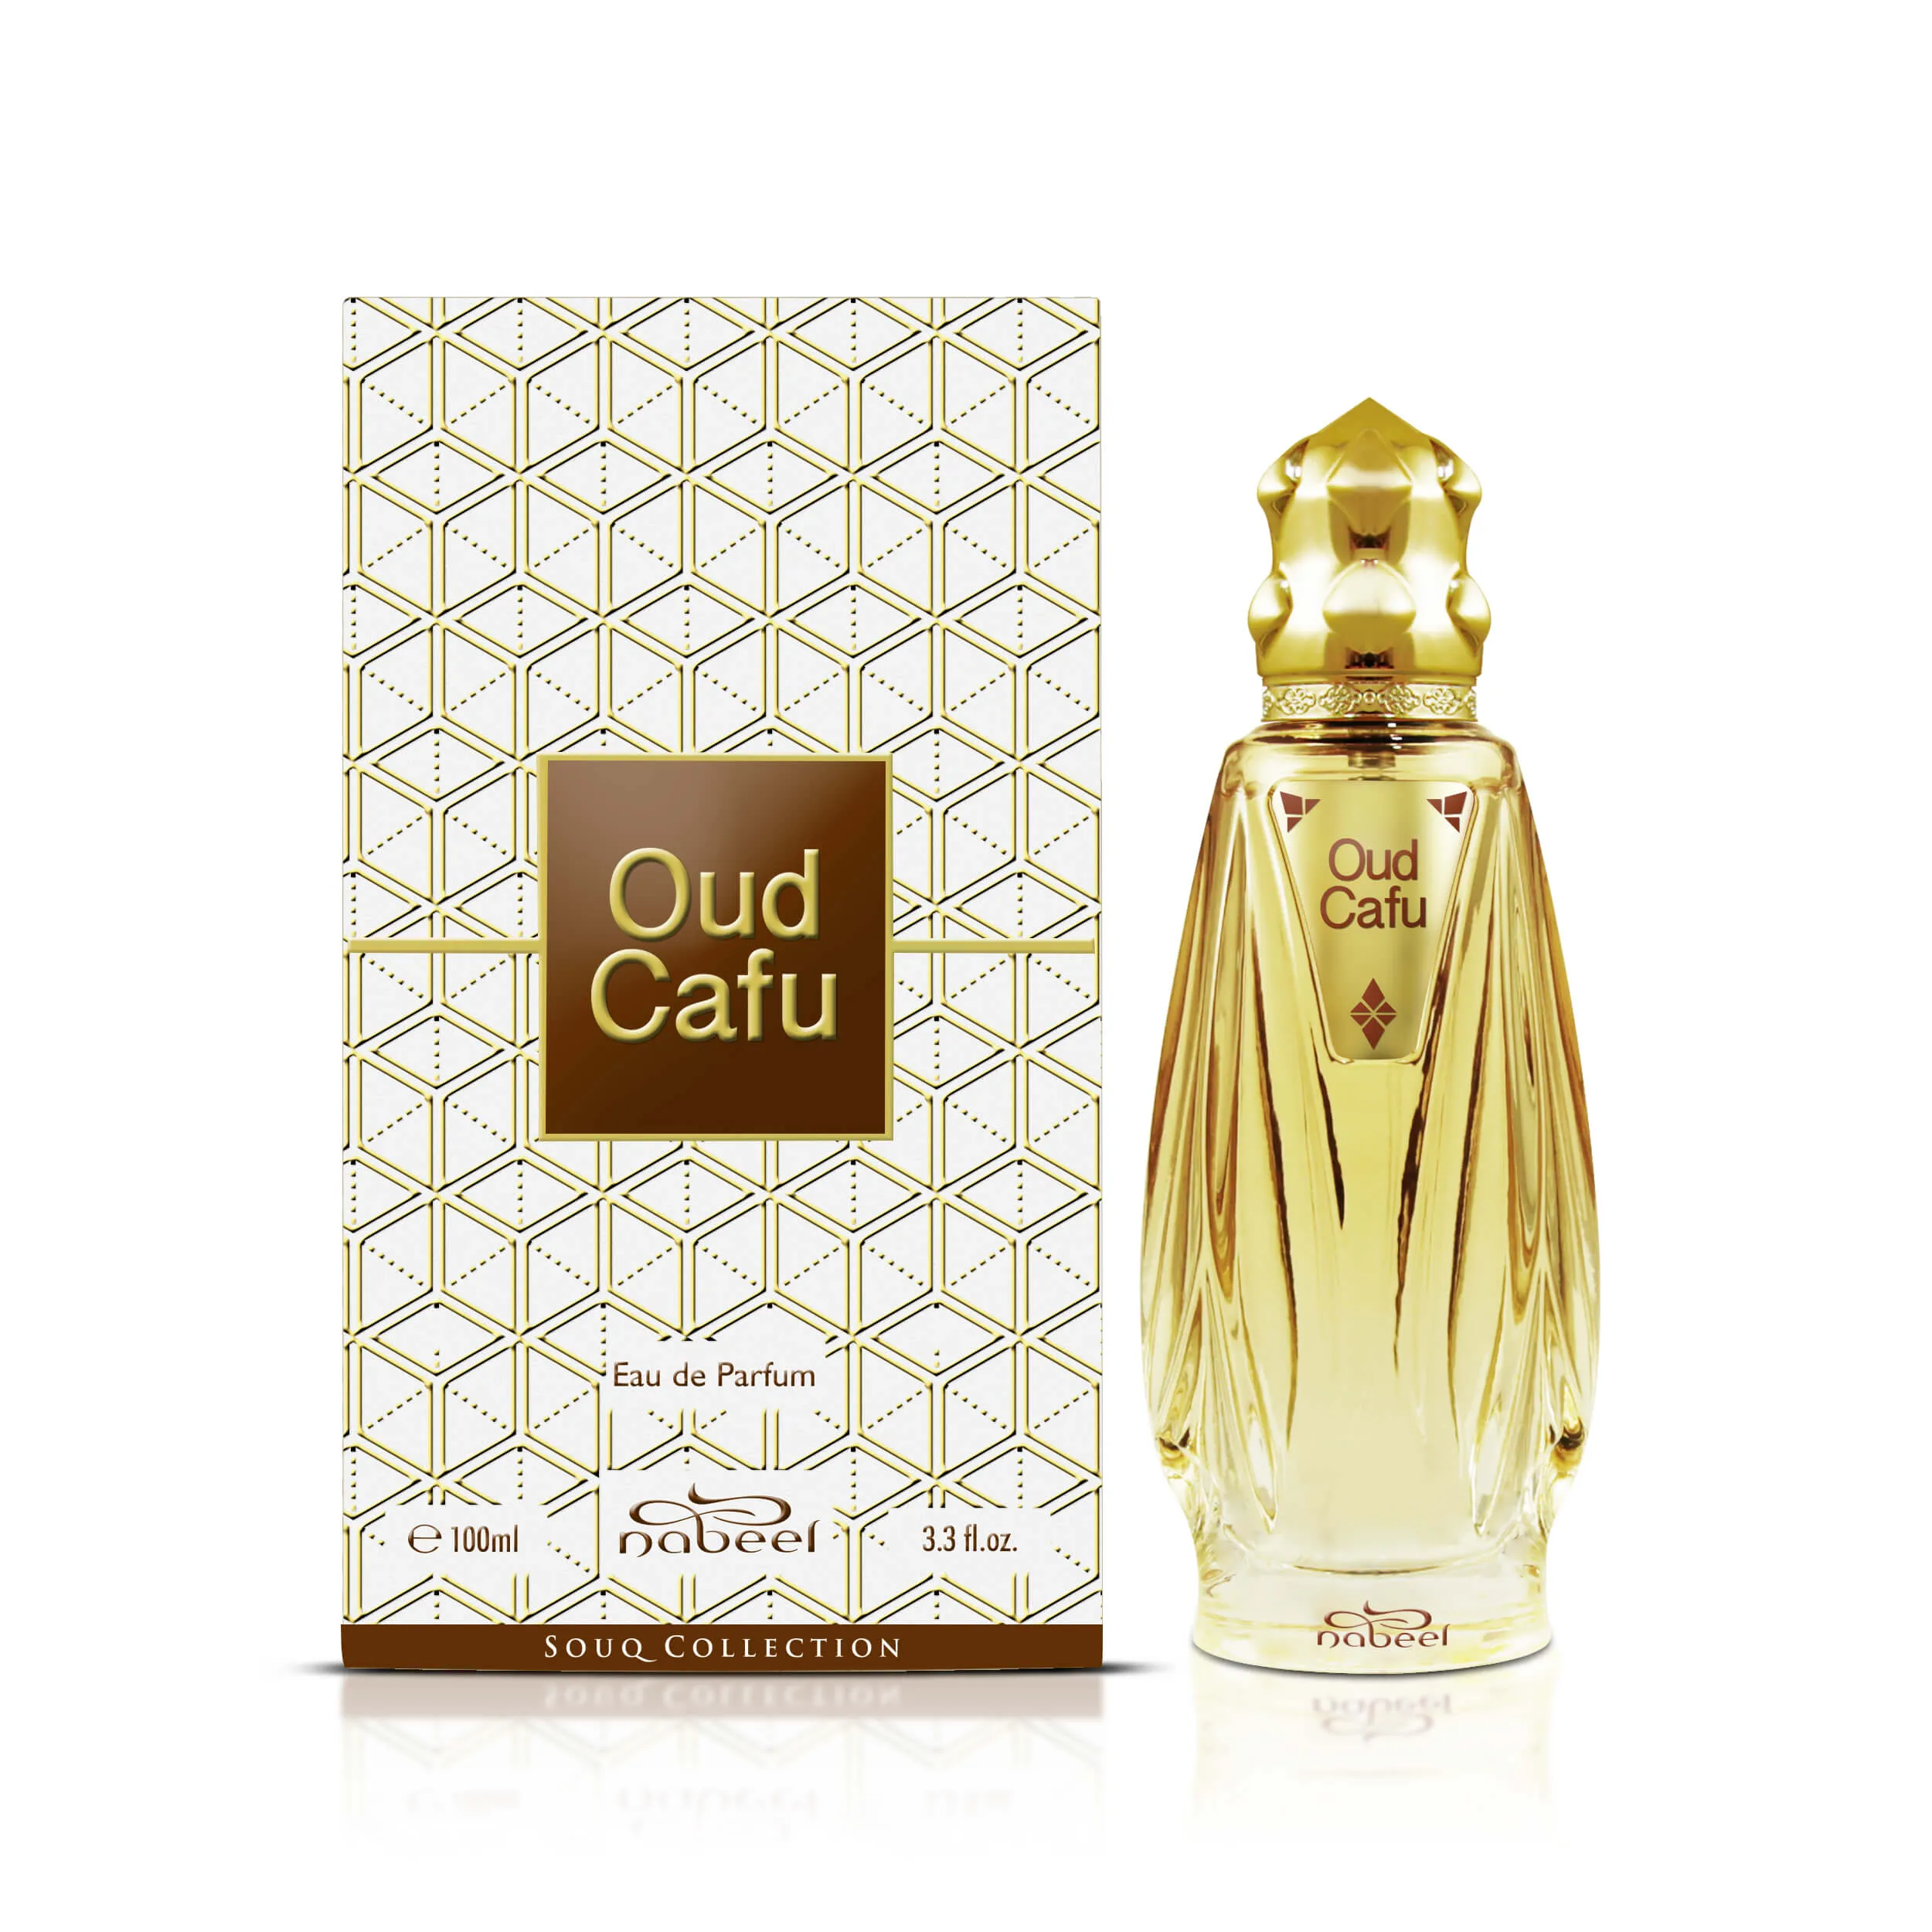 Nabeel - Oud Cafu Eau de Parfum 100 ml